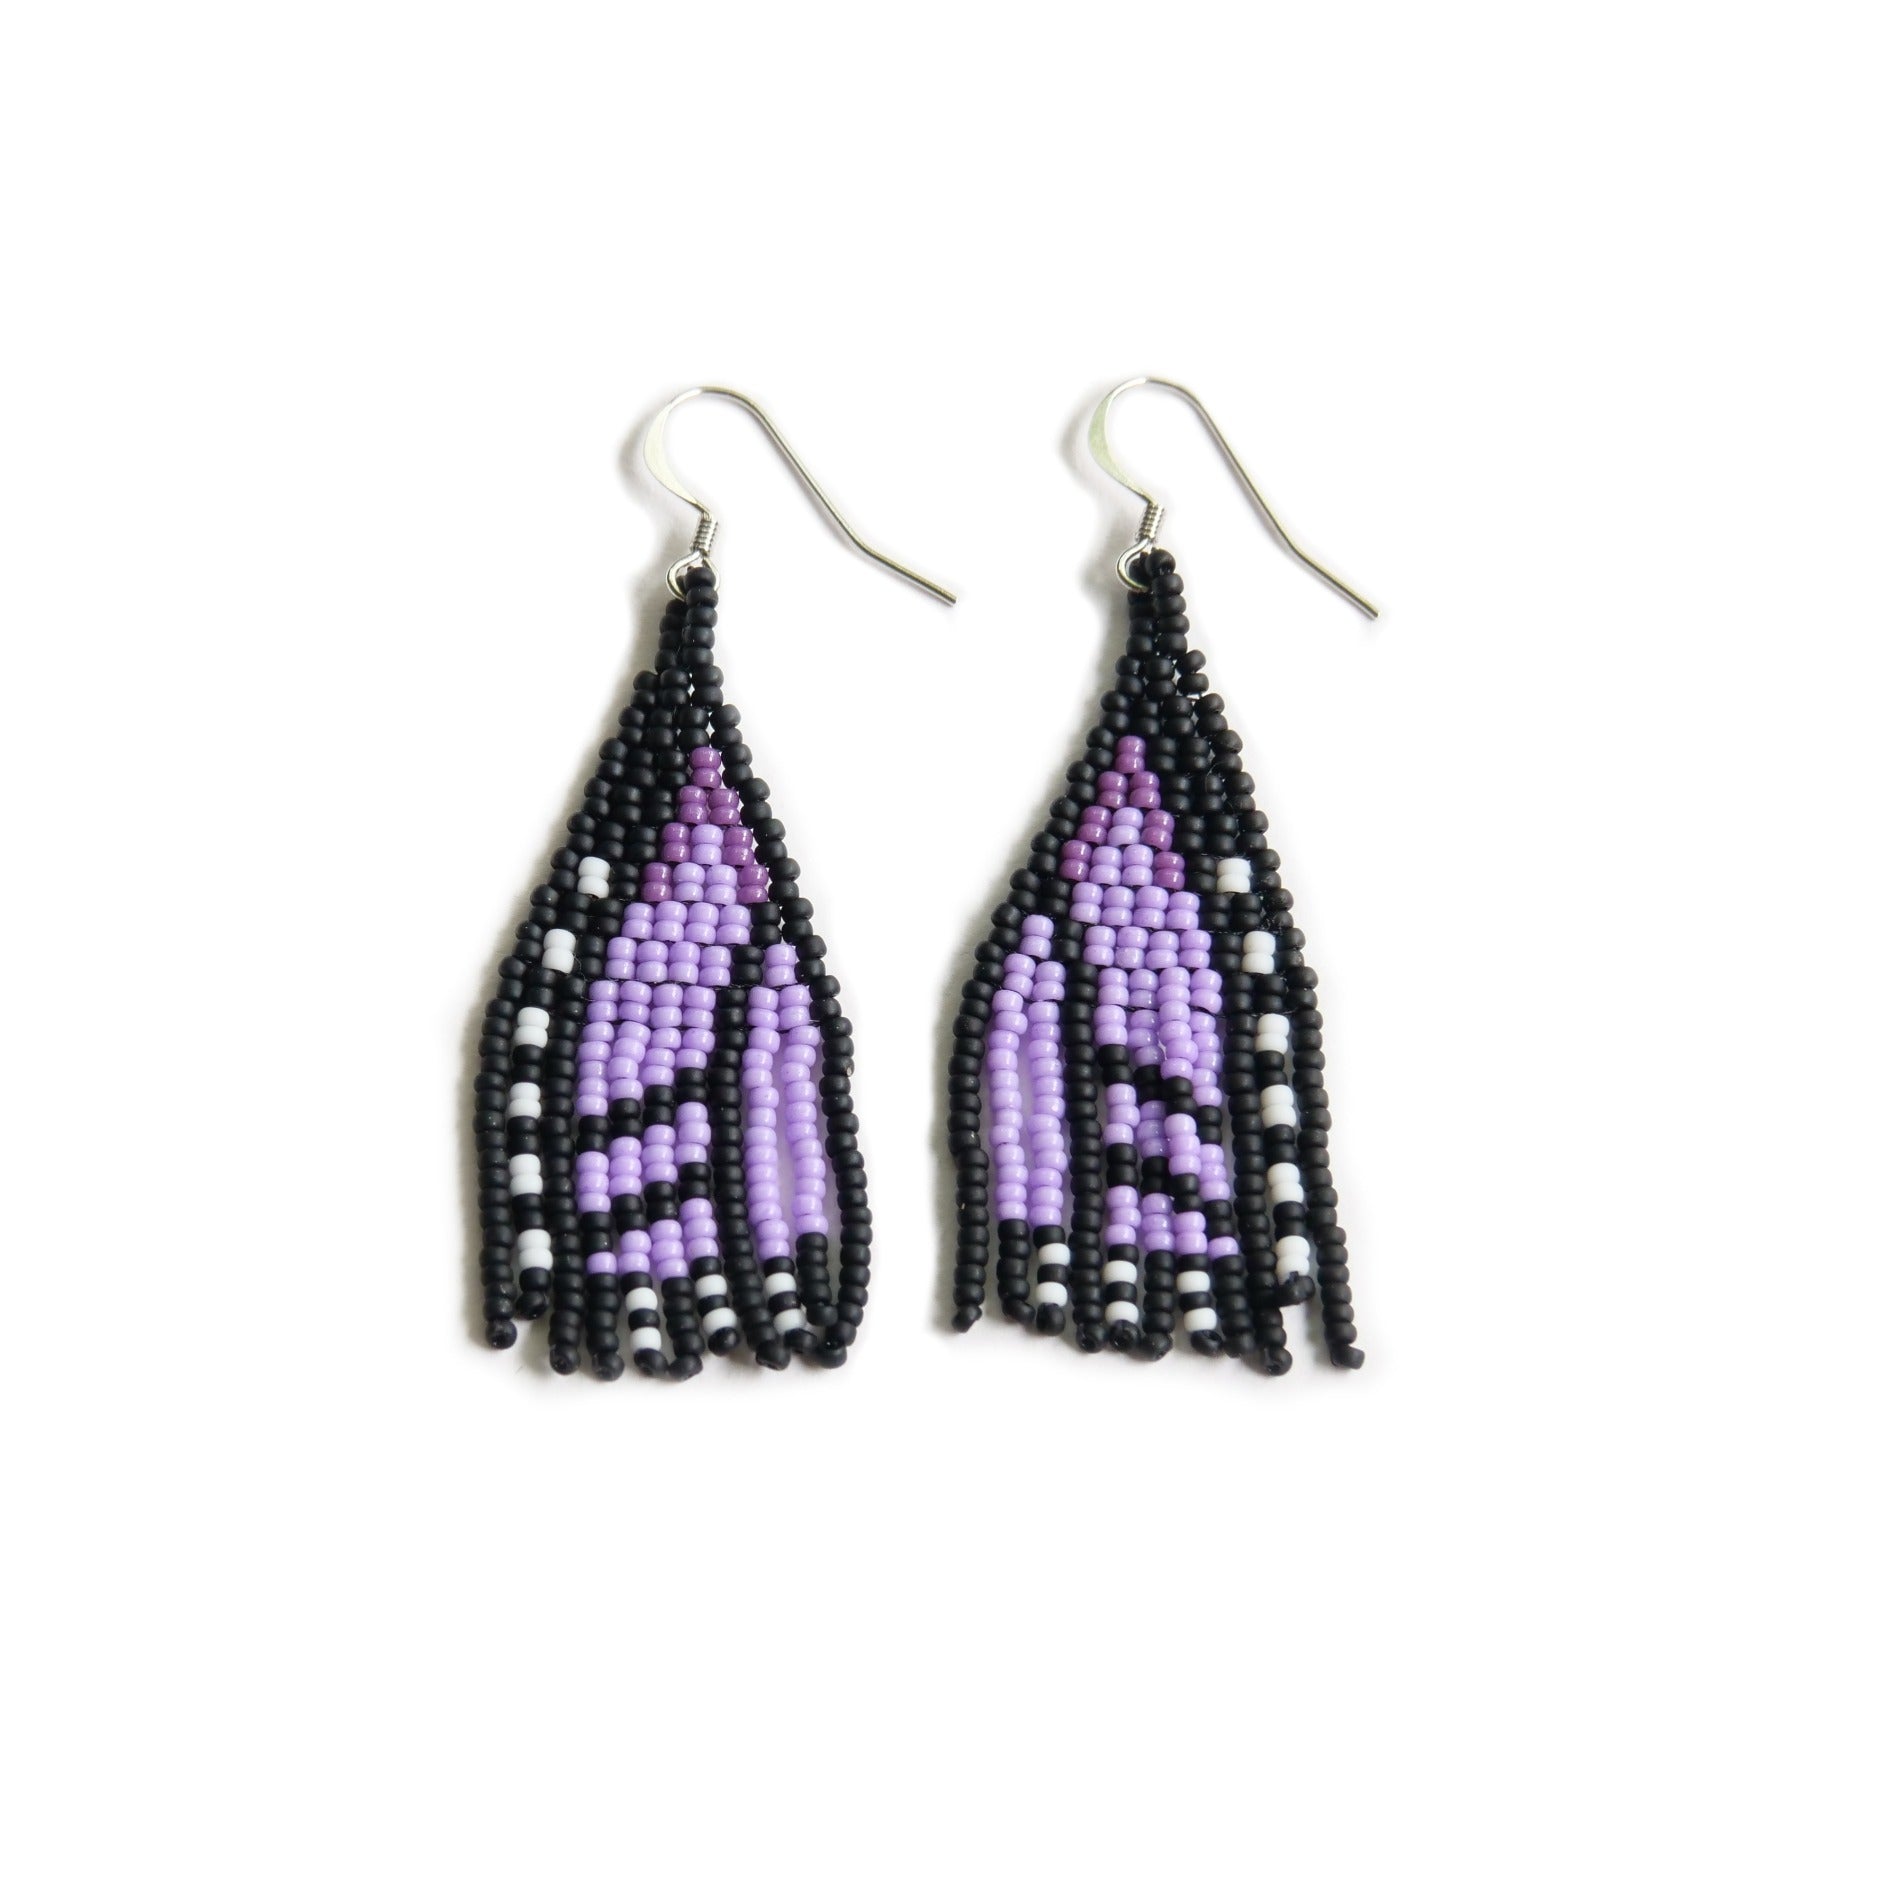 Purple Monarch Butterfly beaded earrings handmade by Canadian indigenous artist Bead n' Butter.